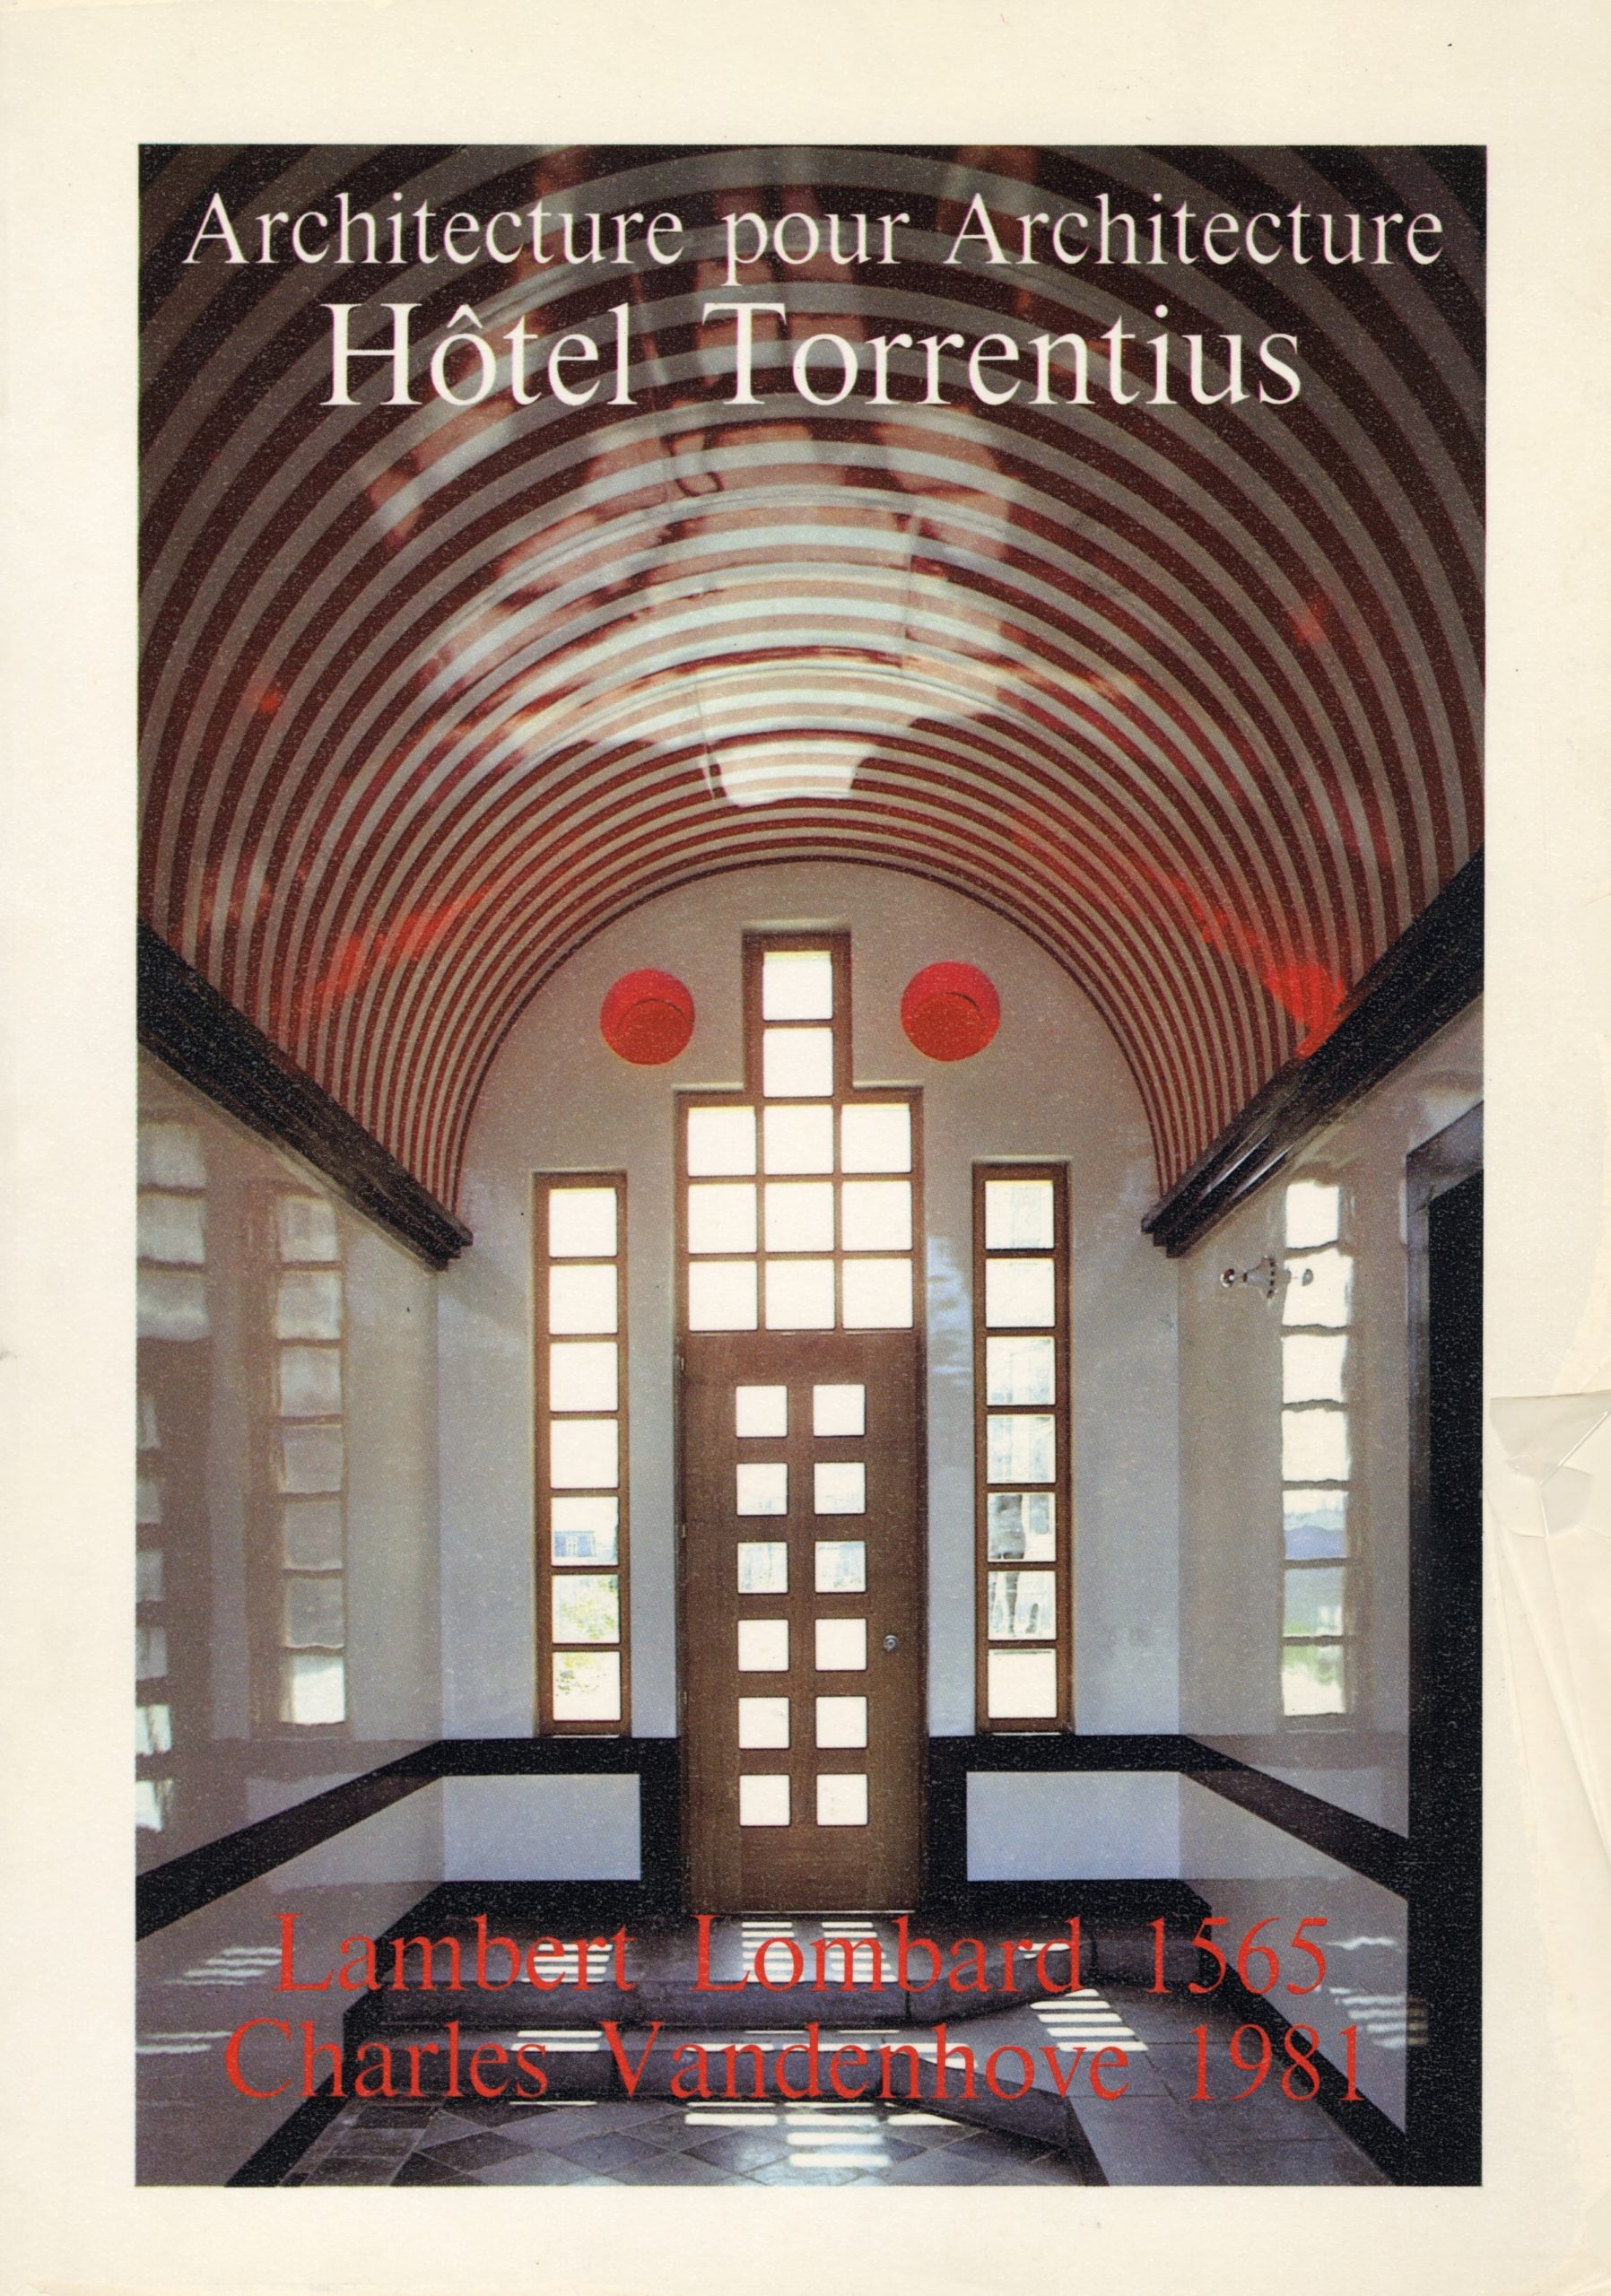 Architecture pour Architecture – Hôtel Torrentius – Lambert Lombart 1565 – Charles Vandenhove 1981